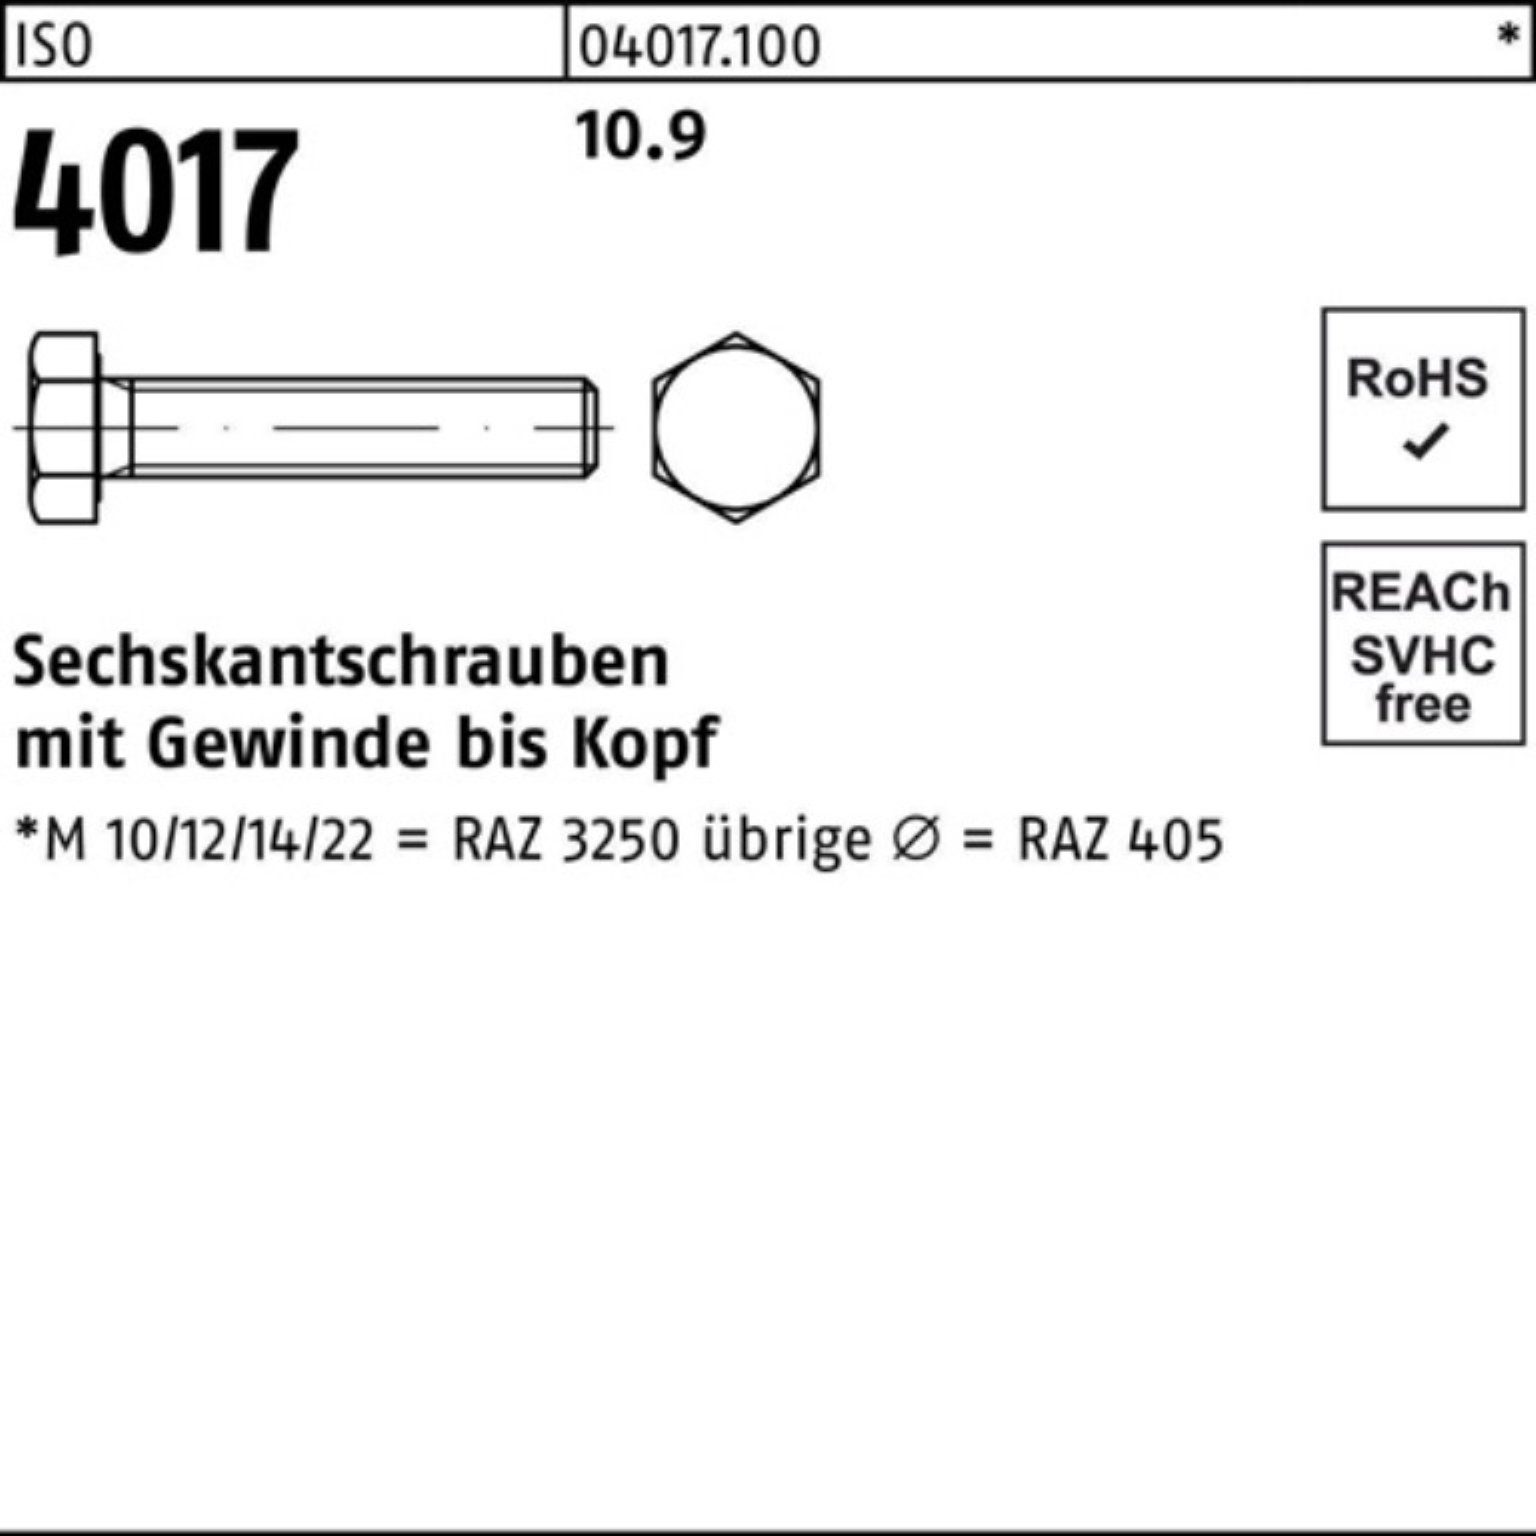 Bufab Sechskantschraube 100er VG 50 ISO 130 Sechskantschraube M12x Pack 4 4017 Stück ISO 10.9